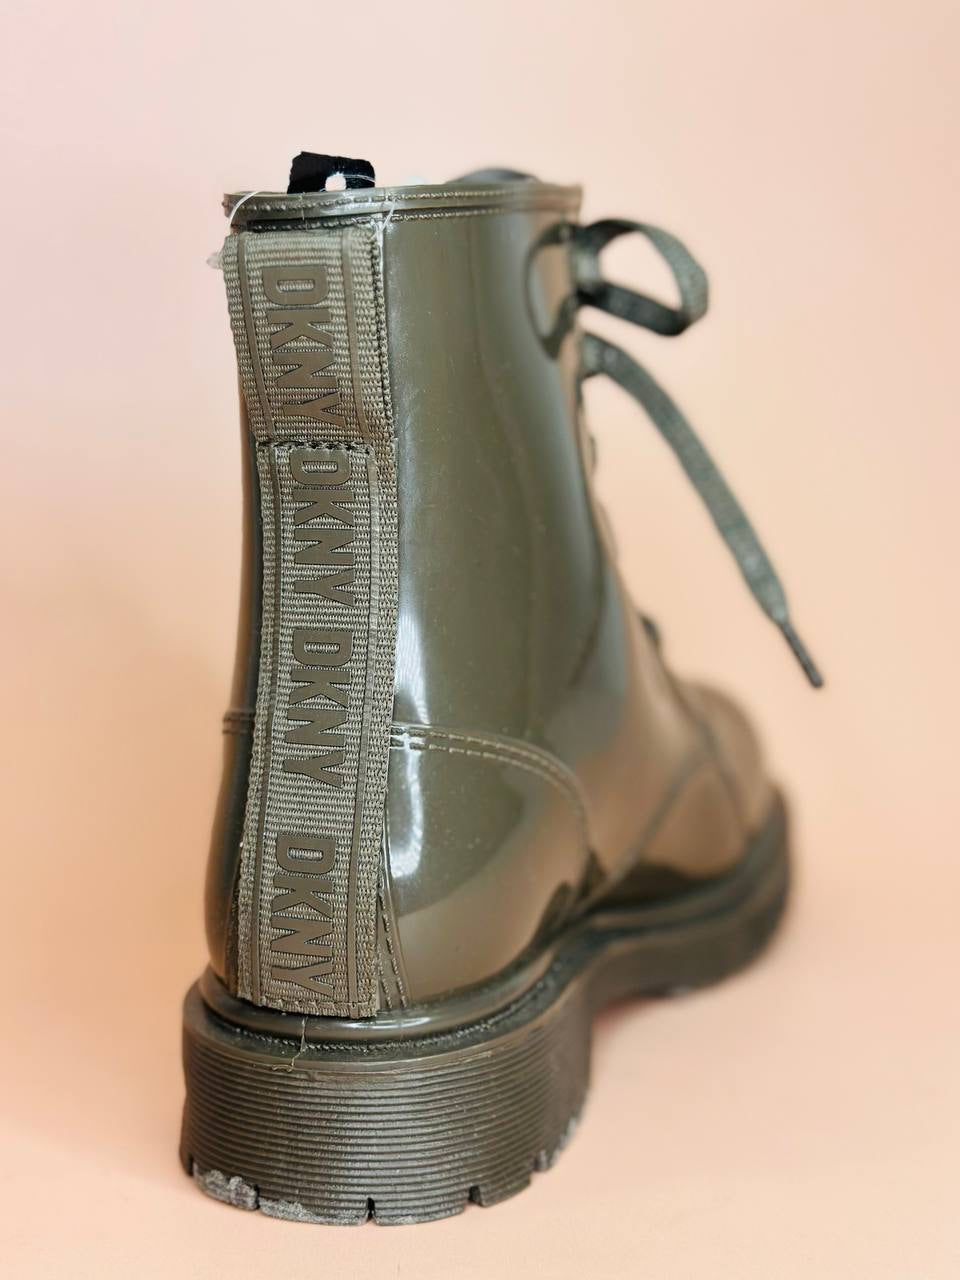 Dkny boots